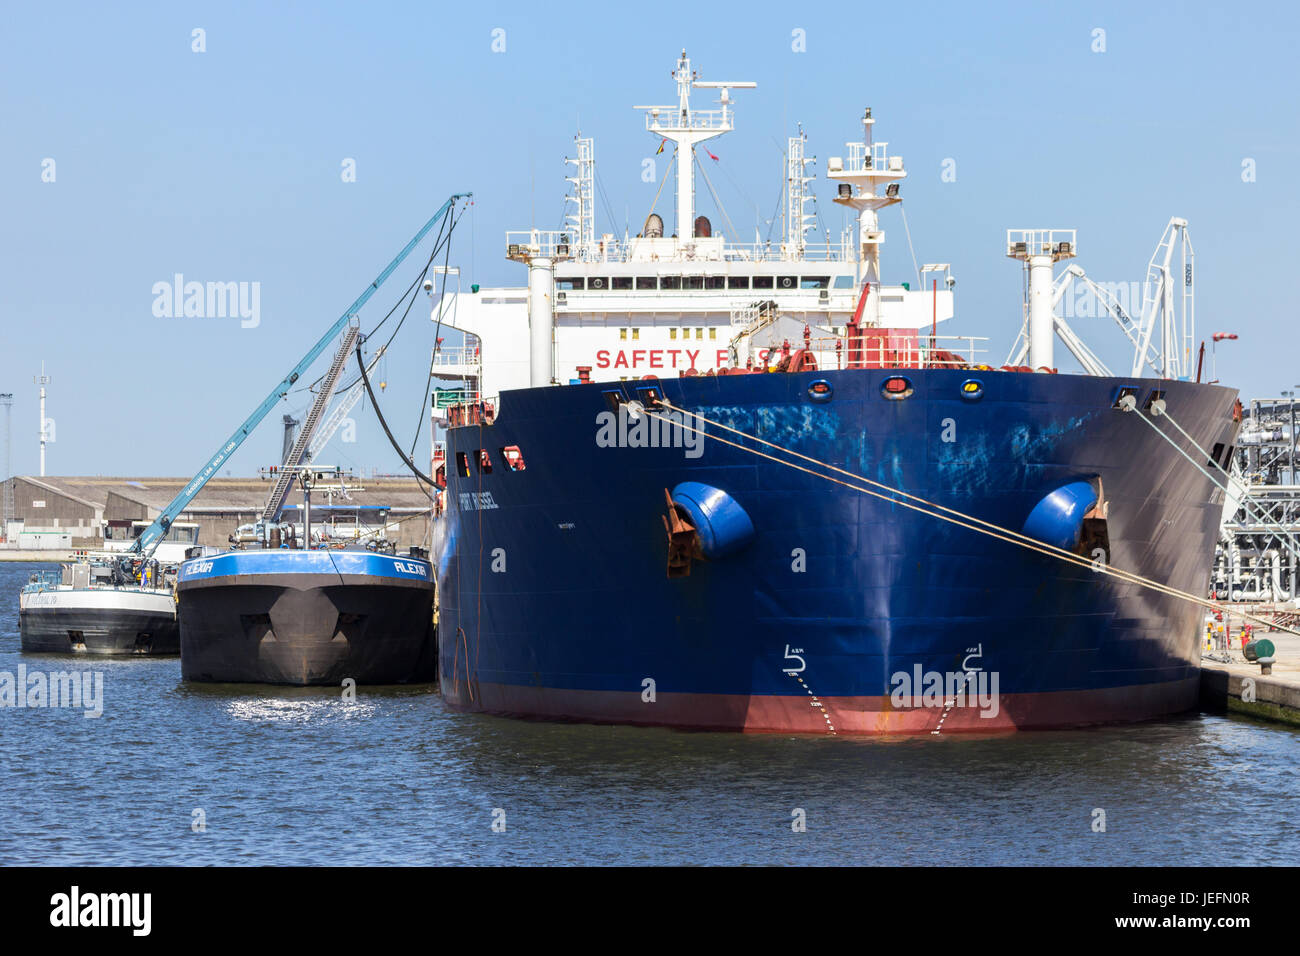 ANTWERP, BELGIUM - JUL 9, 2013: Oil tanker moored in the Port of Antwerp. Stock Photo